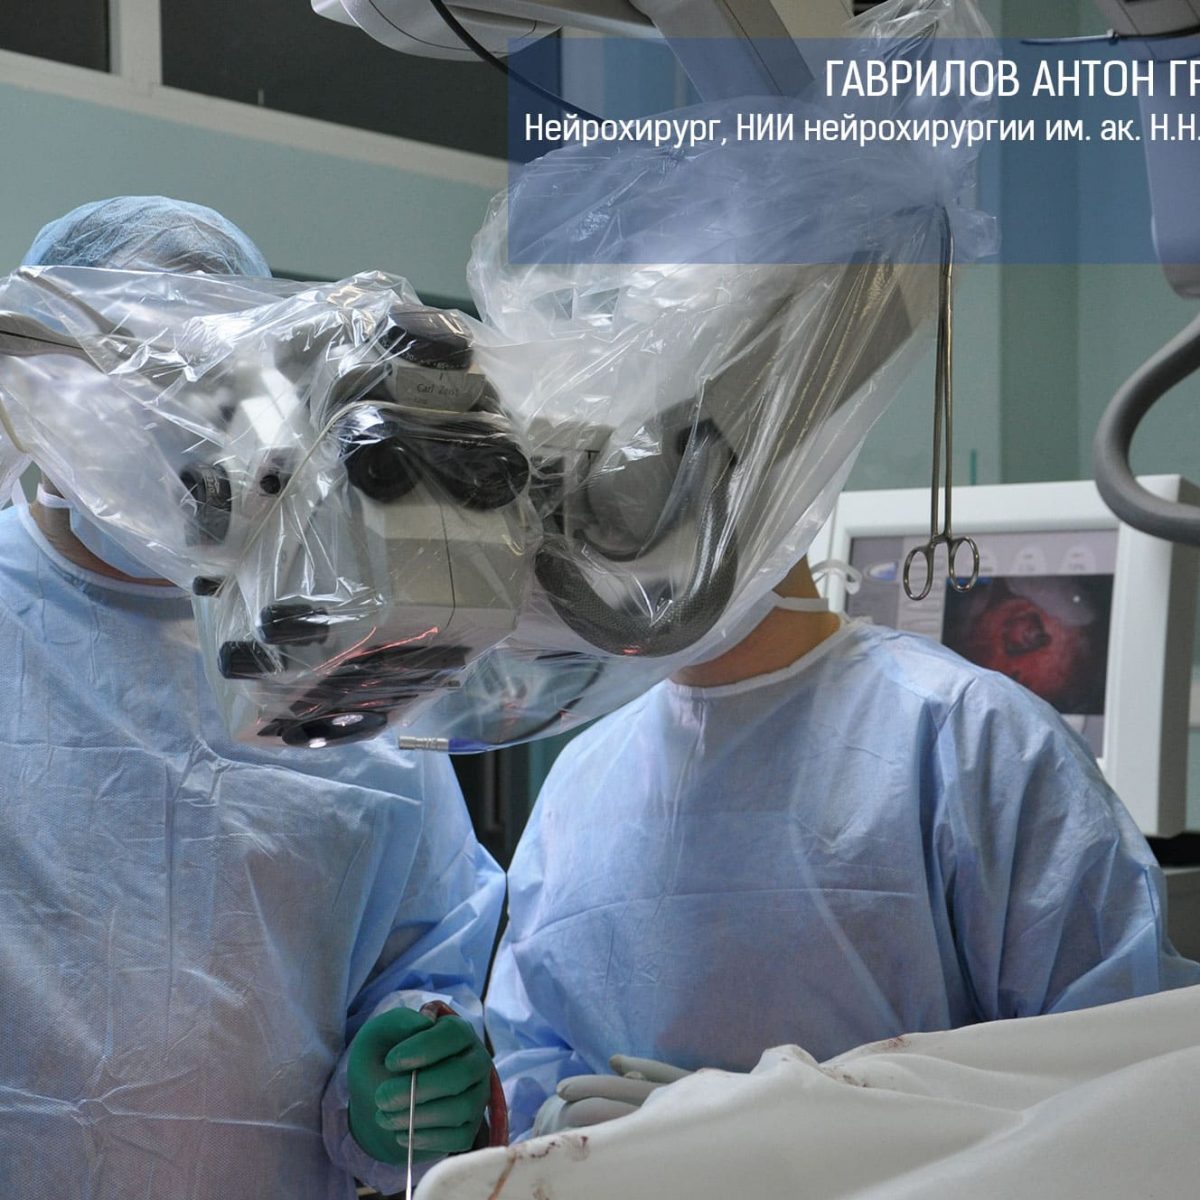 Опухоль пинеальной области головного мозга: лечение, консультация  нейрохирурга - Гаврилов Антон Григорьевич